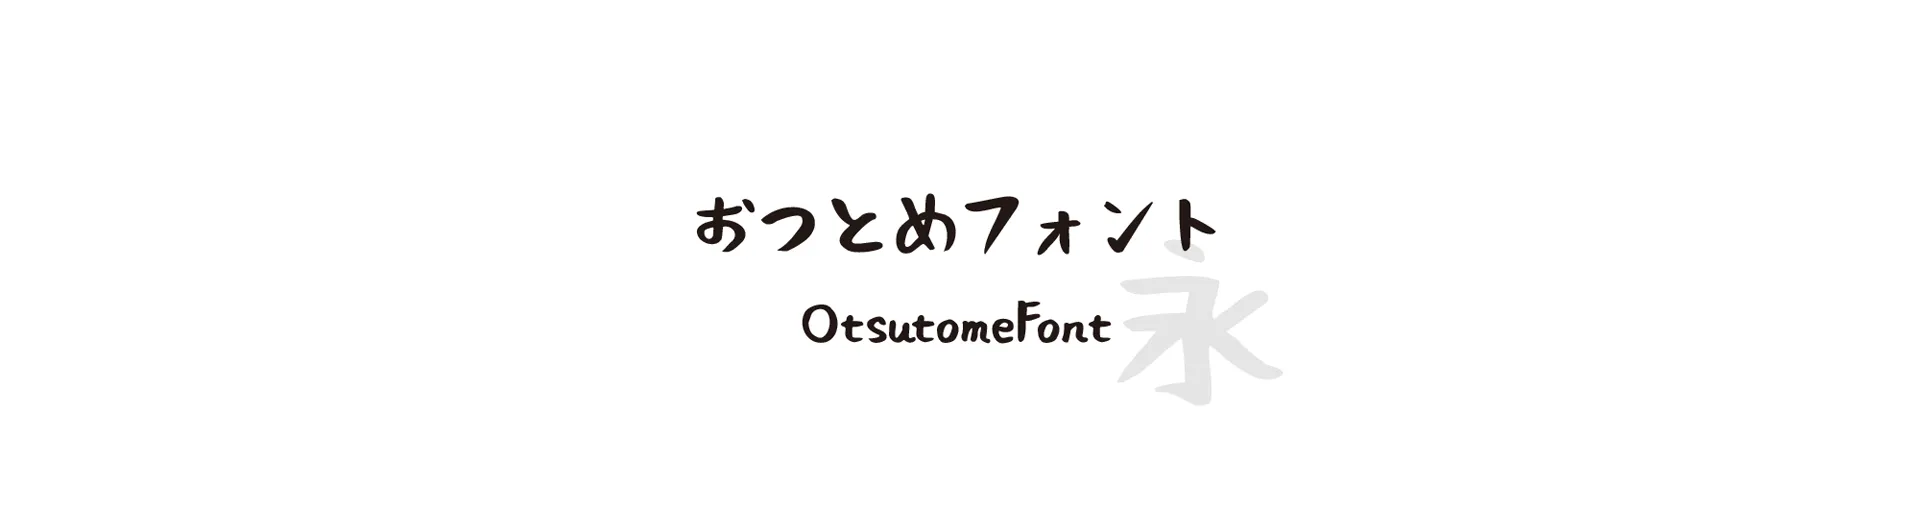 OtsutomeFont